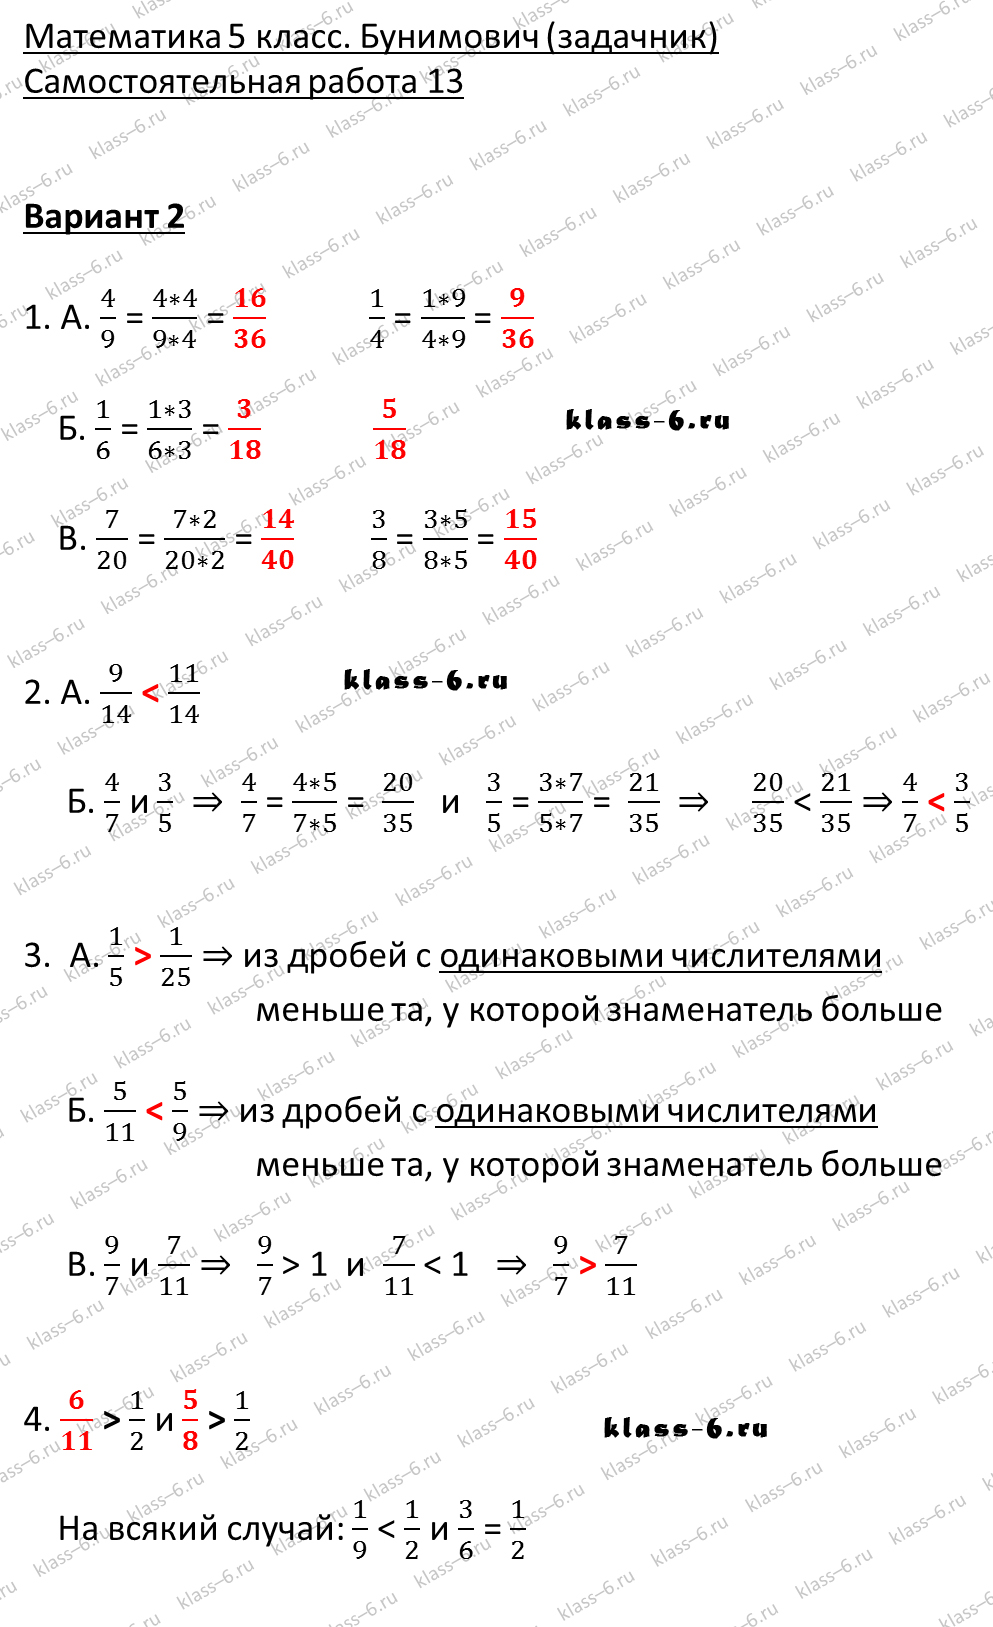 решебник и гдз по математике задачник Бунимович 5 класс самостоятельная работа 13-v2